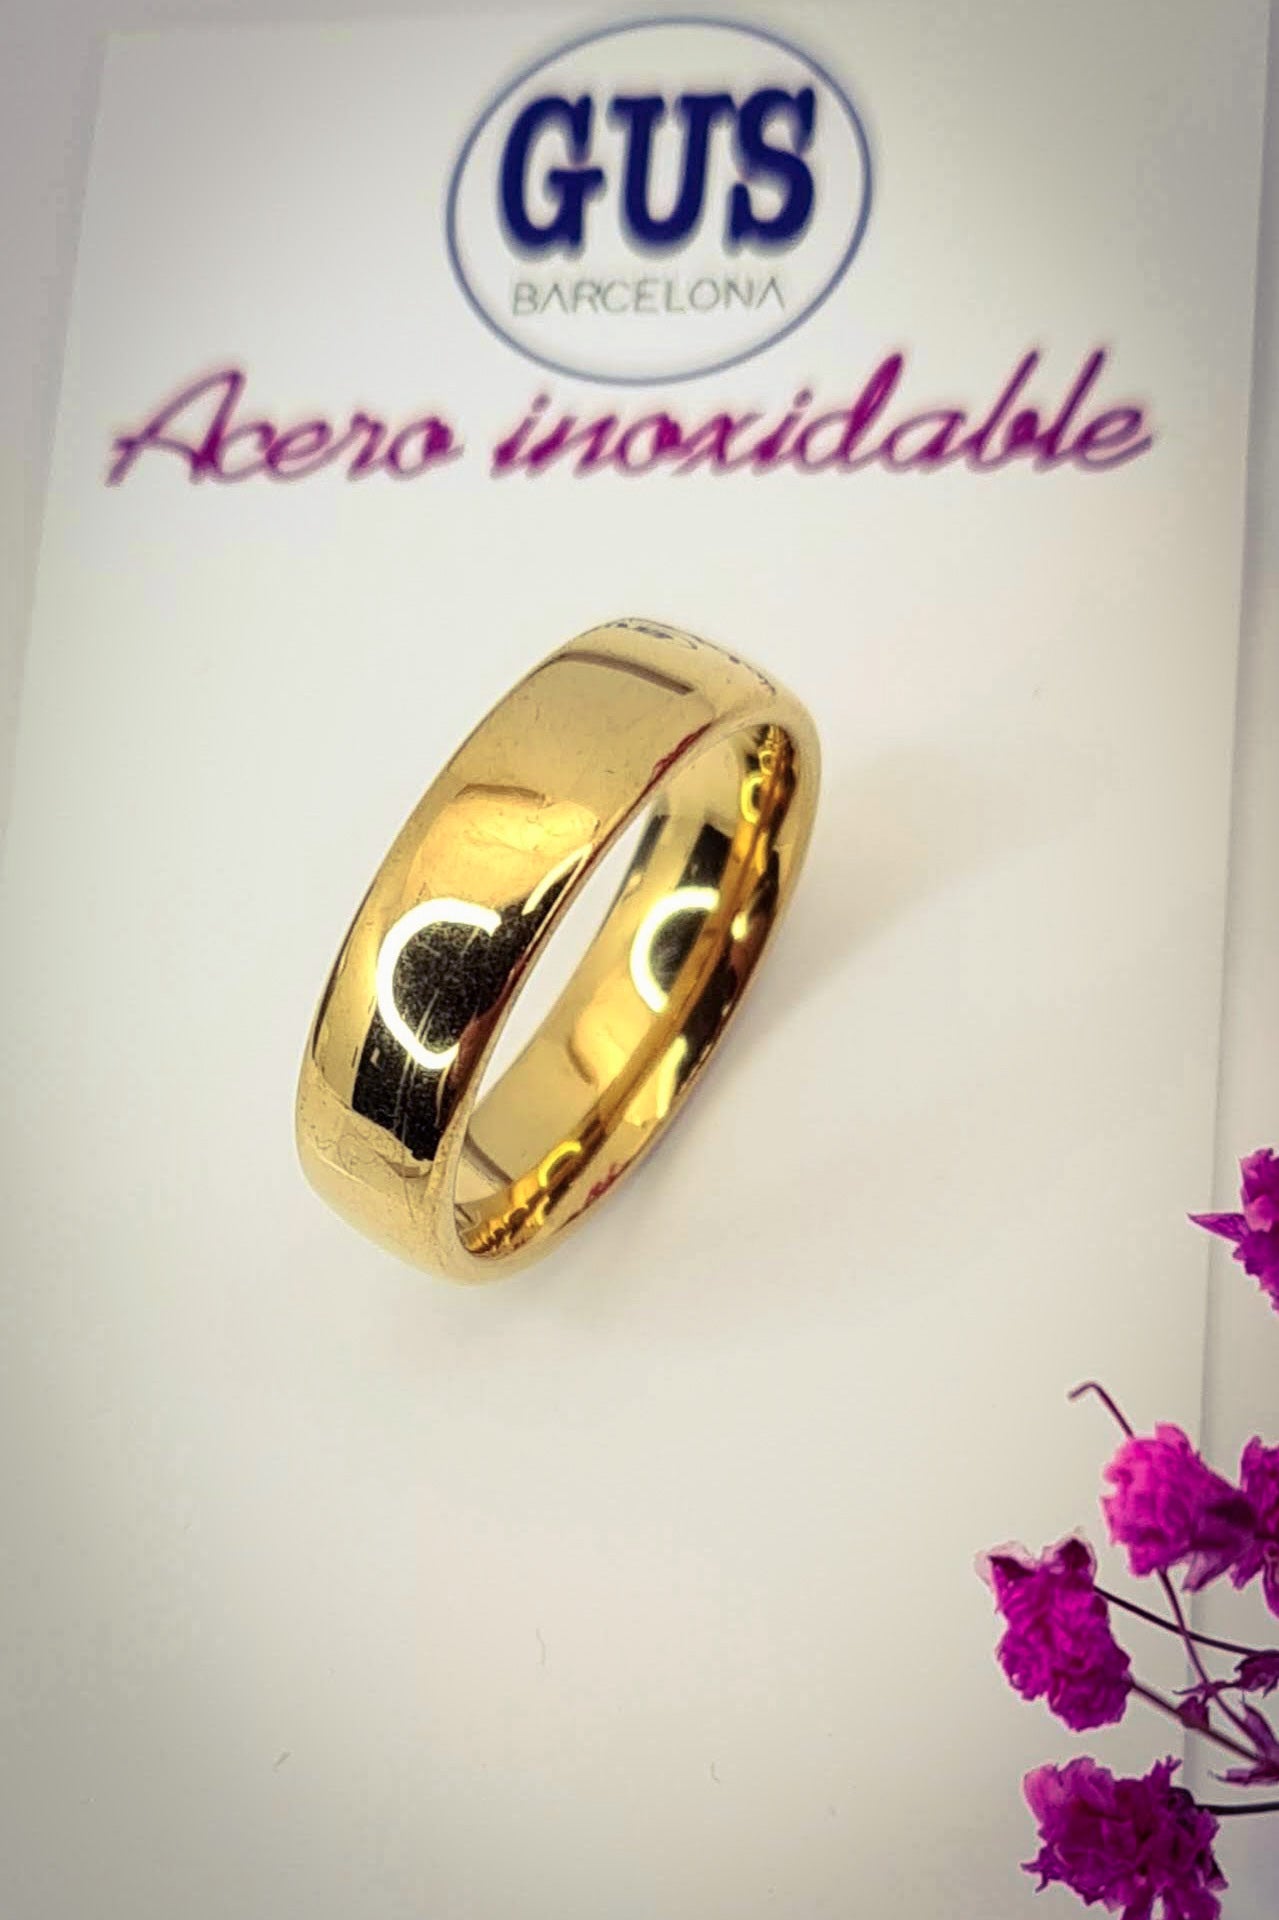 Anillo tipo alianza de matrimonio o pareja en acero inoxidable en color dorado y ancho de 6mm. El anillo está sobre la base de un cartón con el logo gus barcelona. Se incluye grabado de nombres y fecha importante gratis.